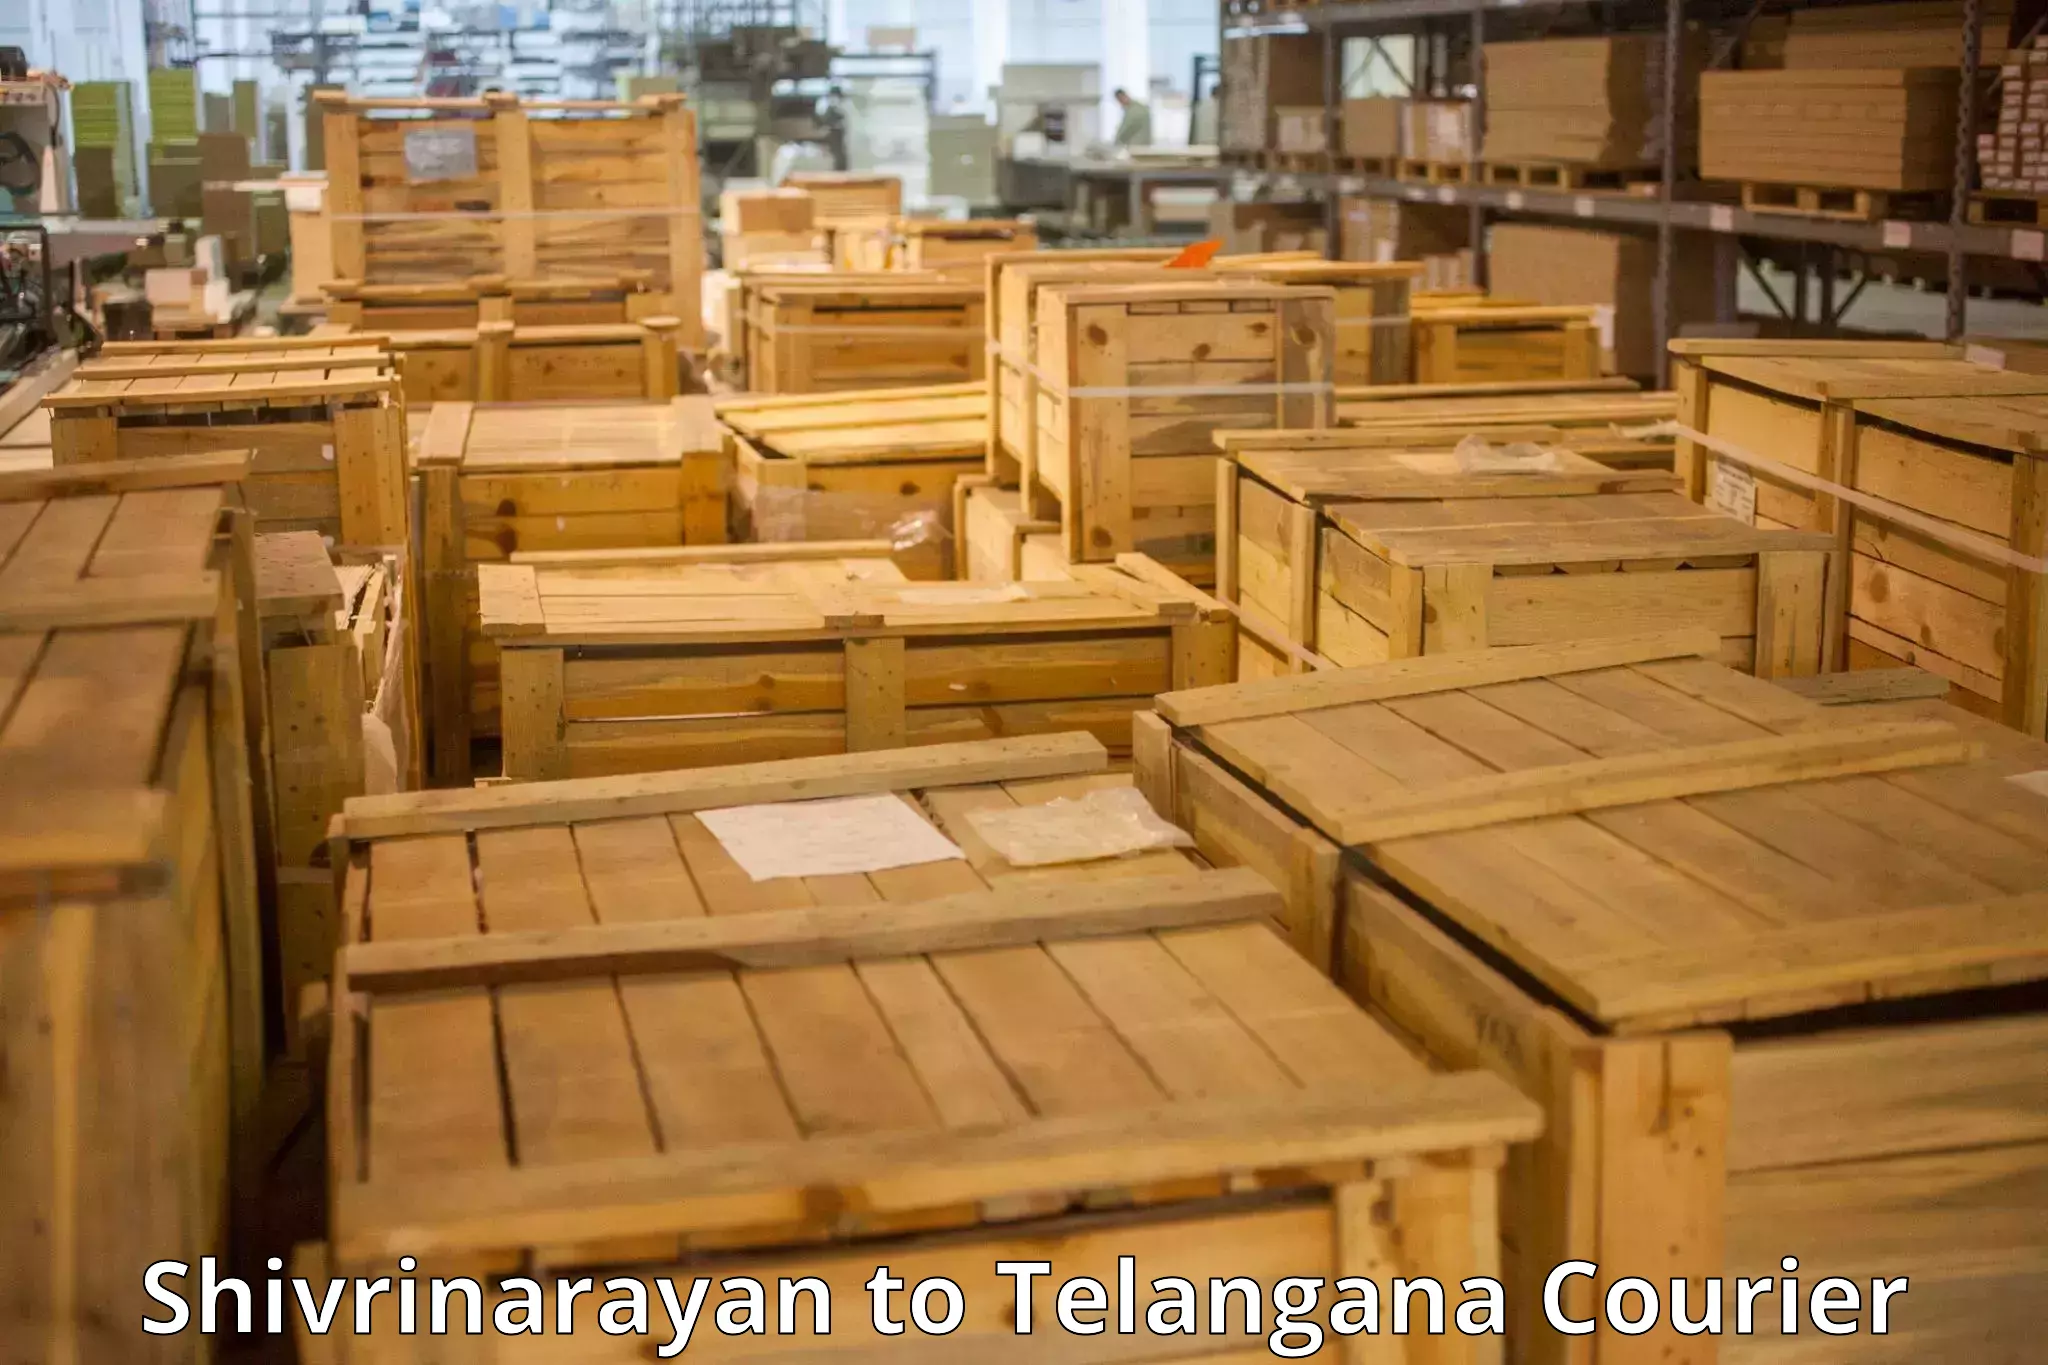 Baggage transport services Shivrinarayan to Telangana